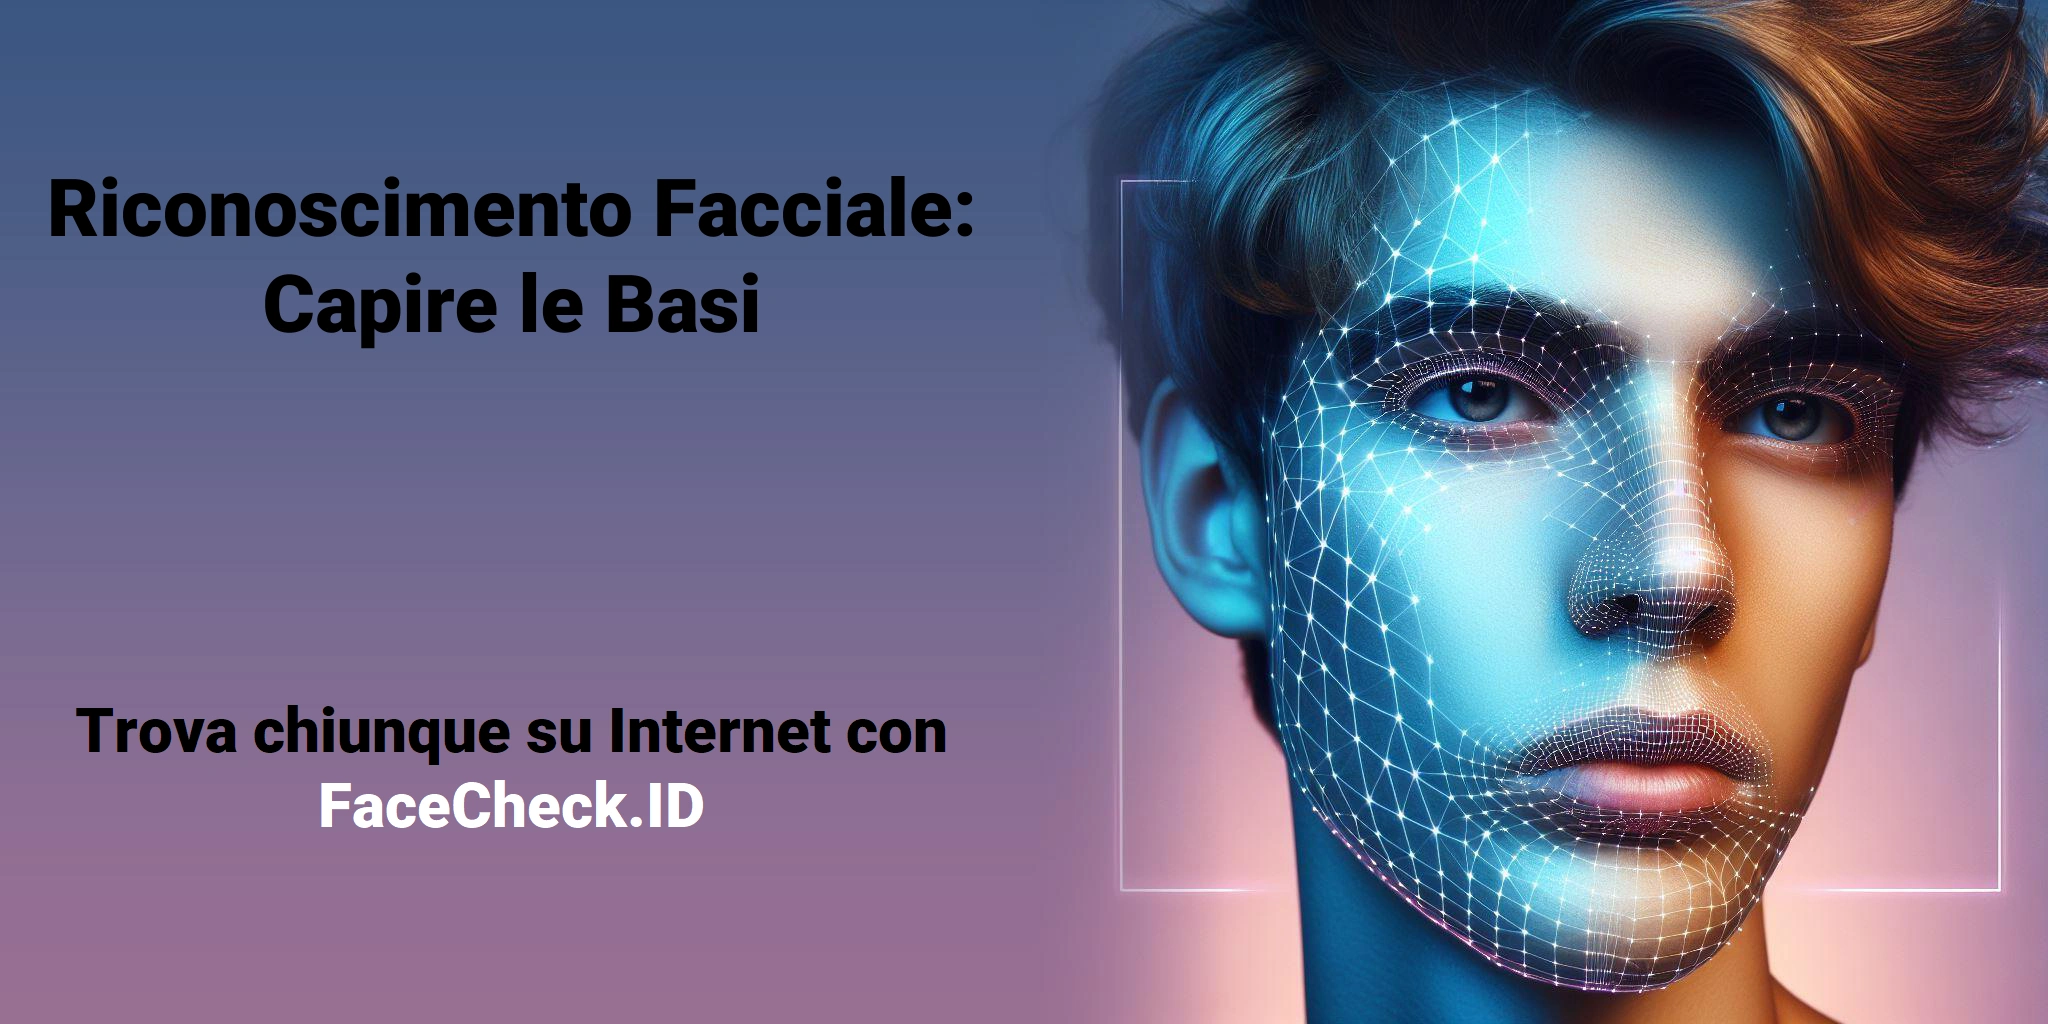 Riconoscimento Facciale: Capire le Basi Trova chiunque su Internet con FaceCheck.ID